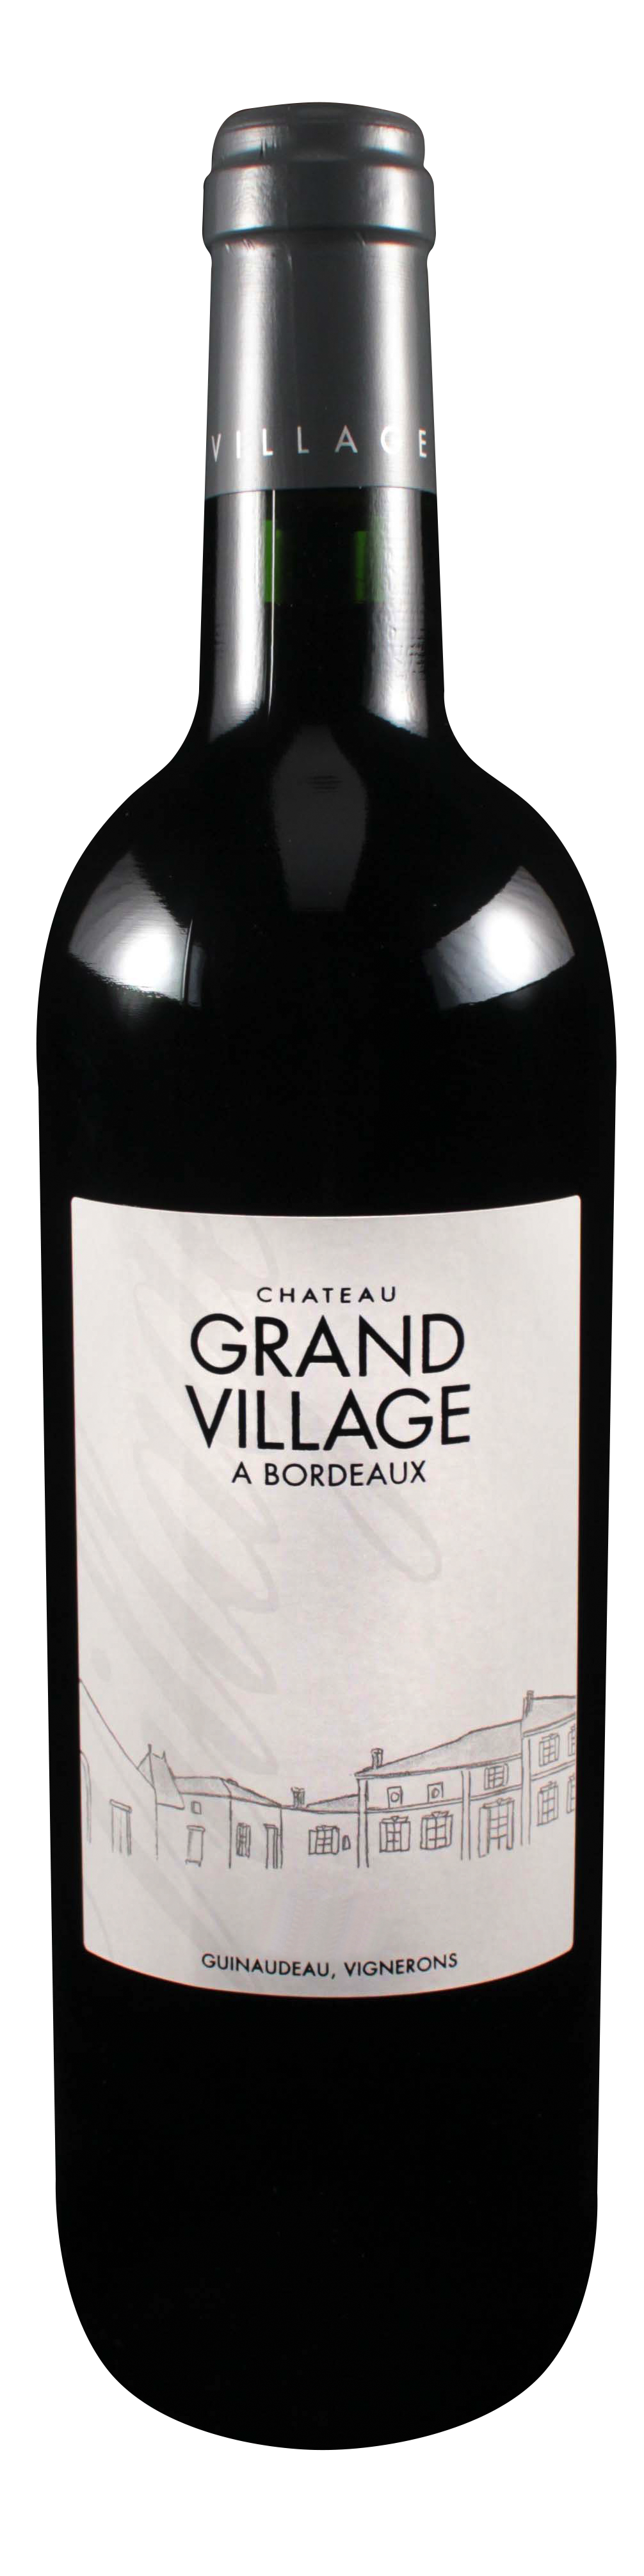 Bottle shot of 2009 Château Grand Village Rouge, Bordeaux Supérieur